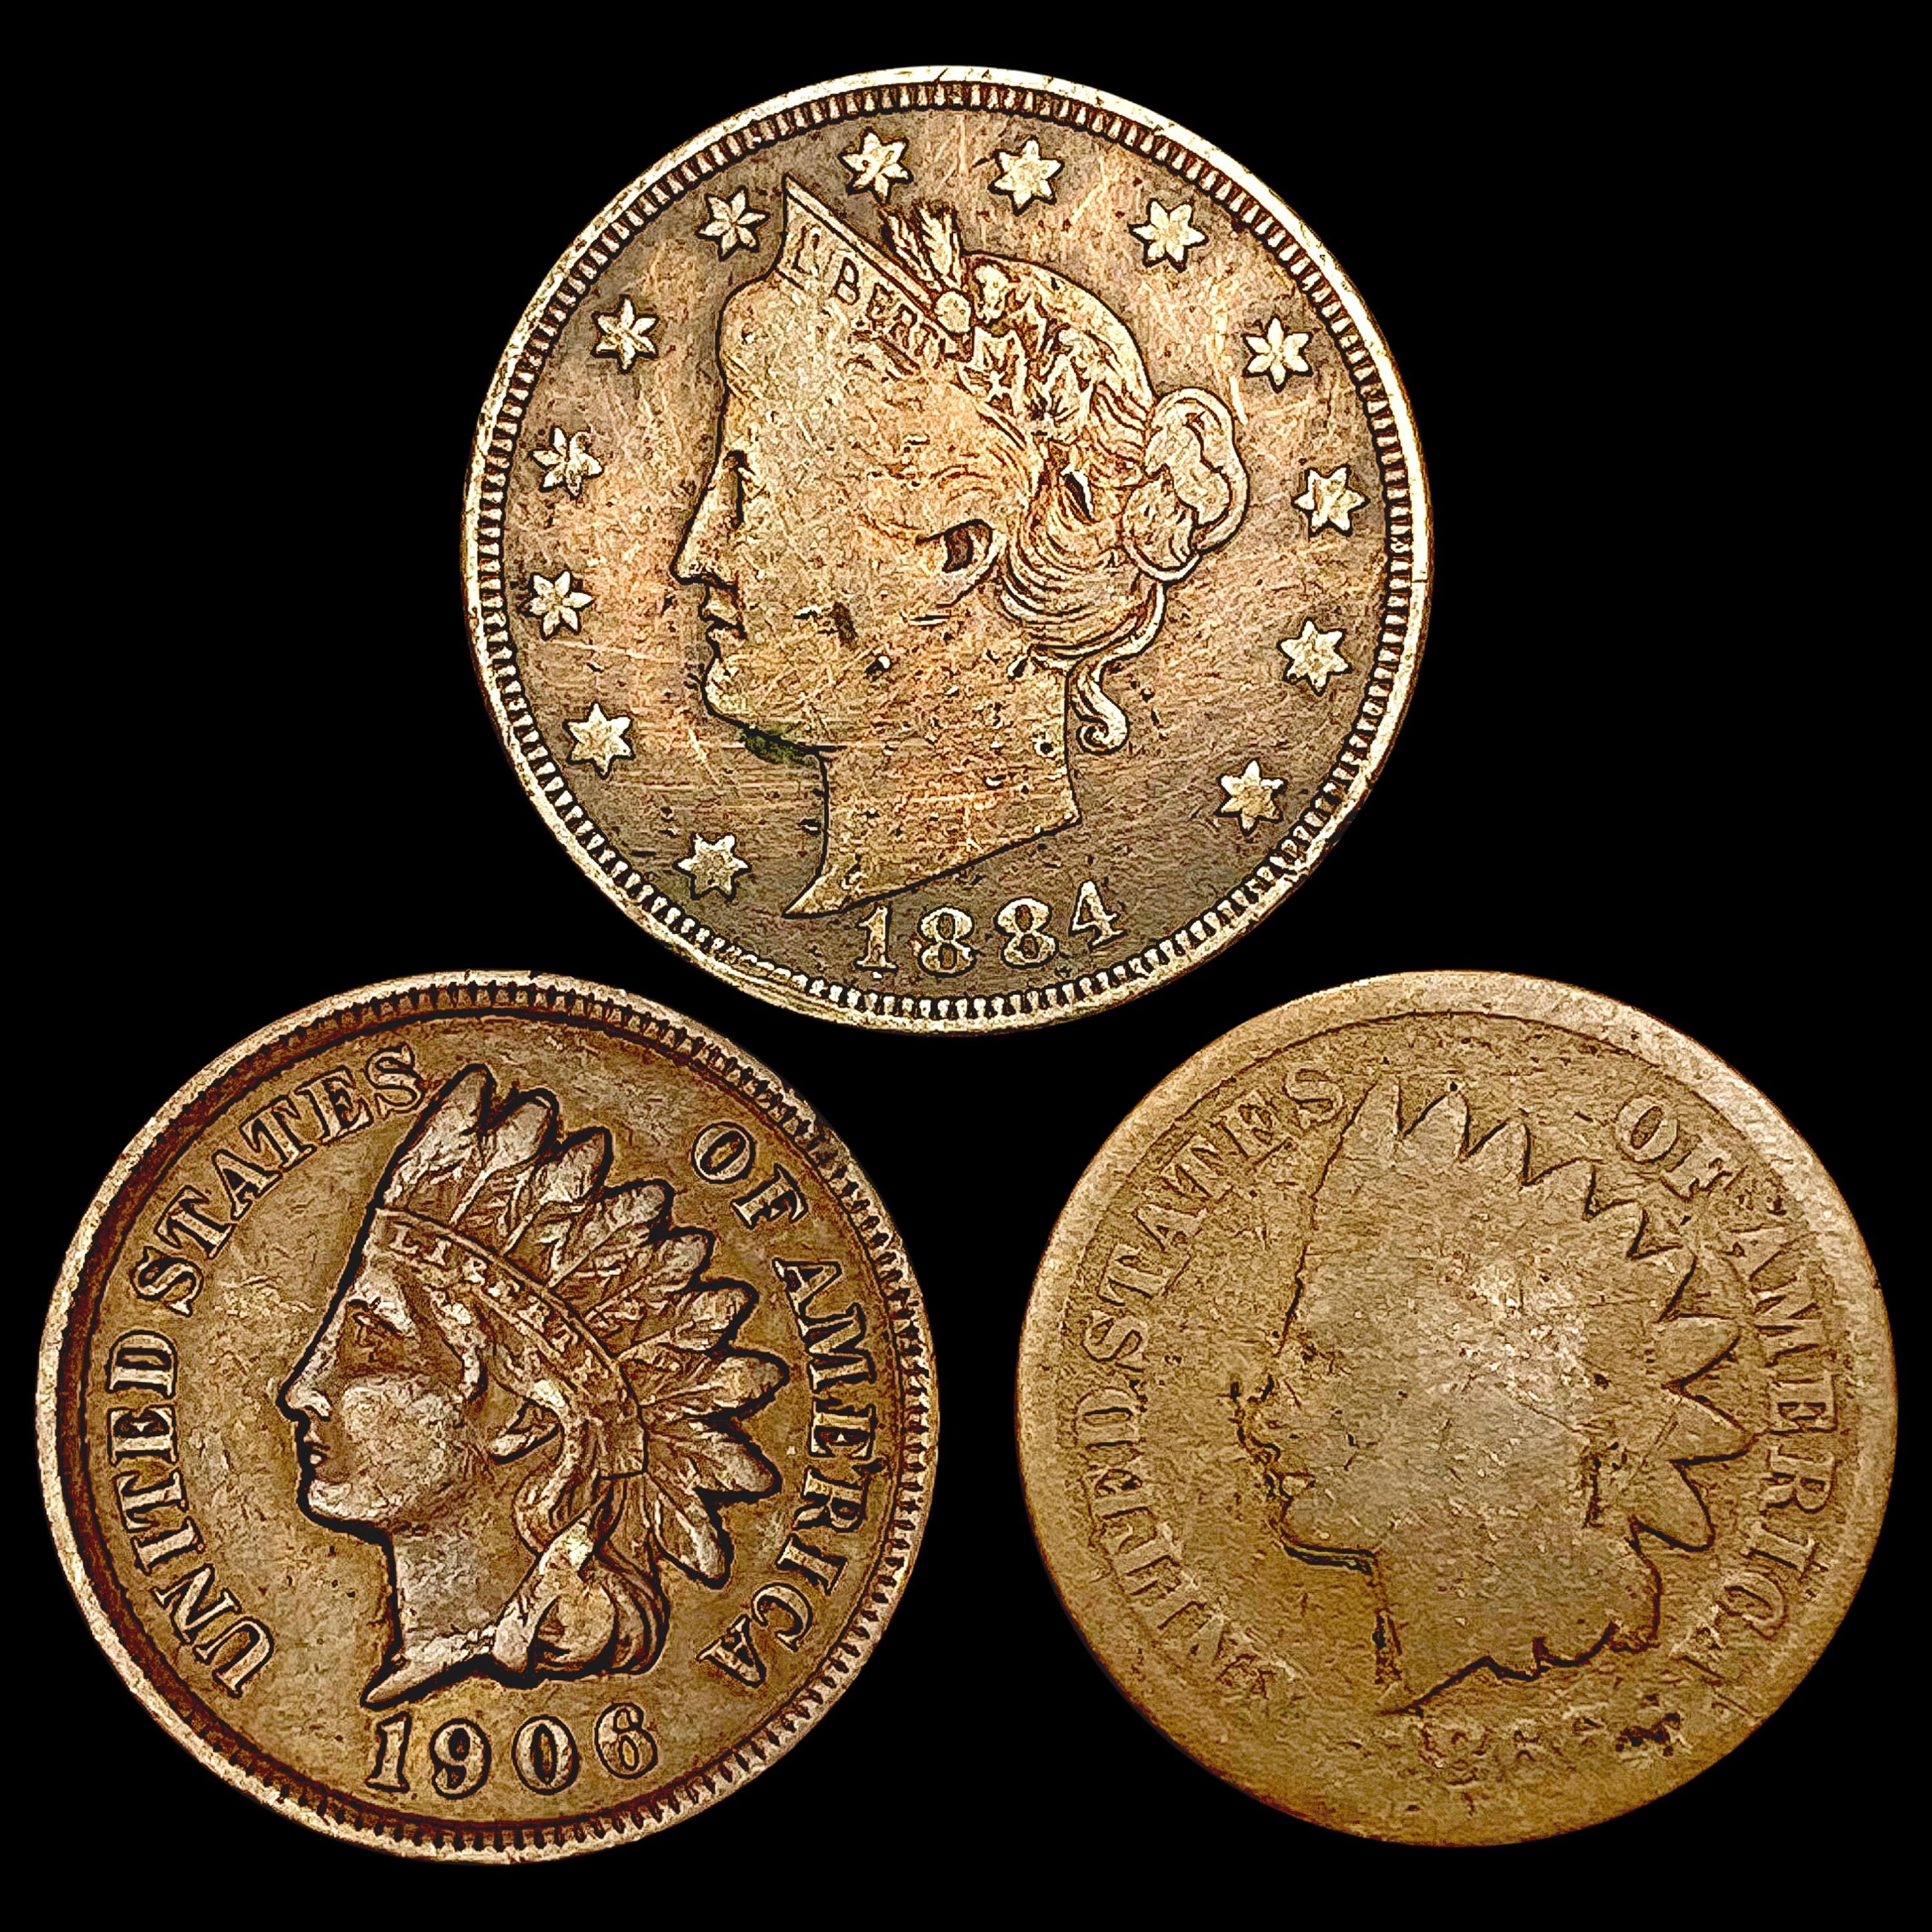 [3] Varied US Coinage [1866, 1884, 1906] HIGH GRAD